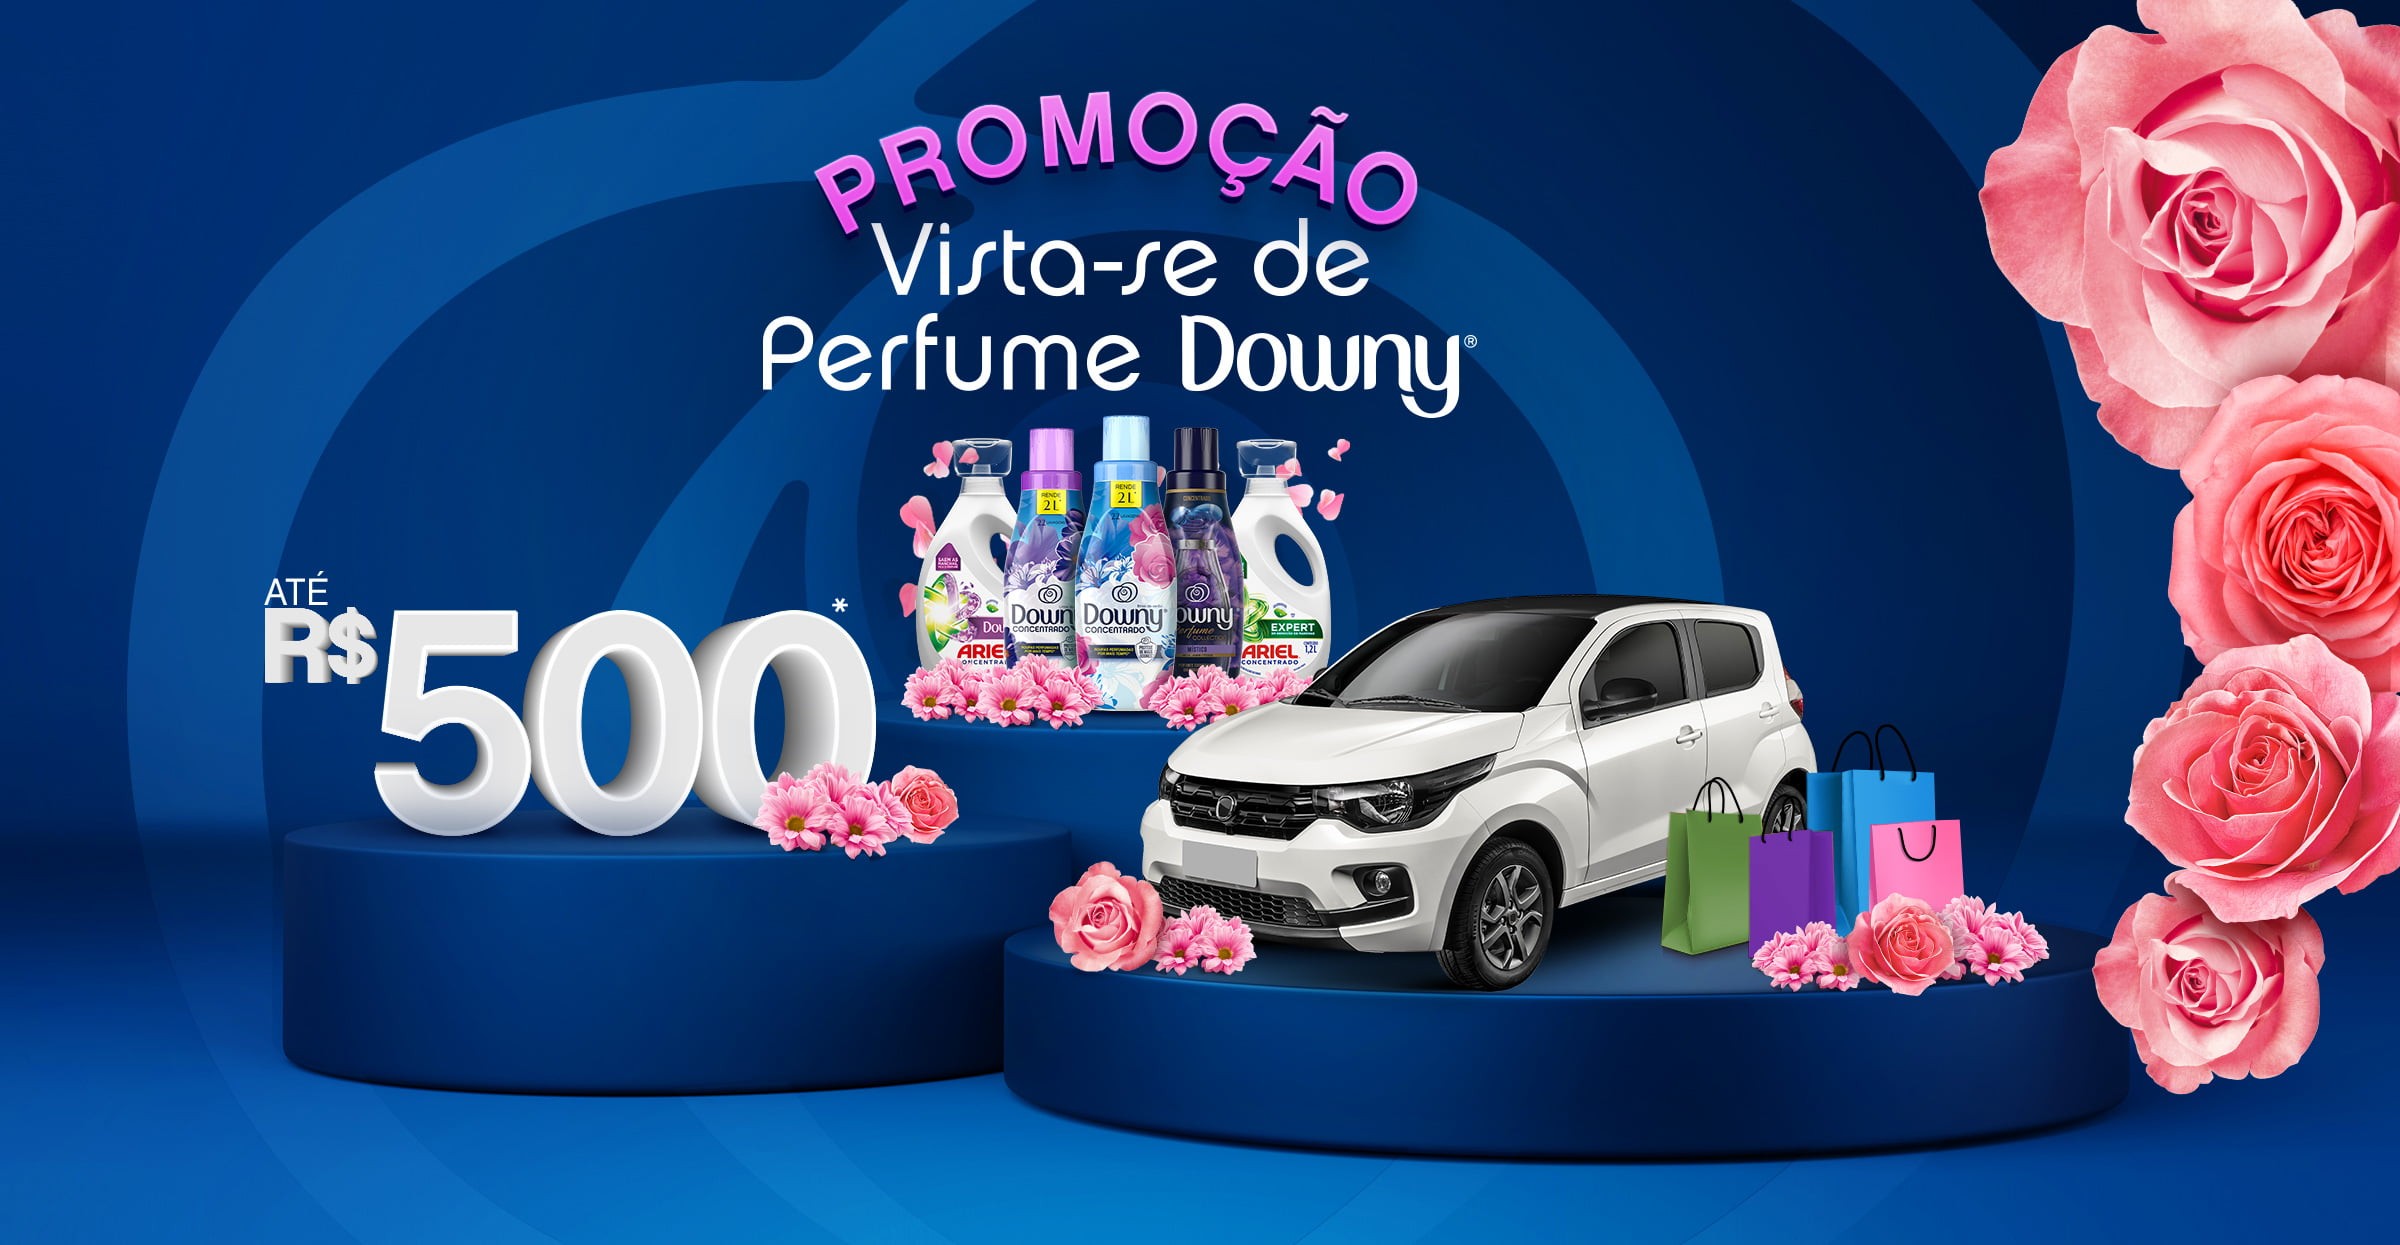 Promoção "Vista-se de Perfume Downy" celebra 10 anos da marca no Brasil com sorteios de dois veículos 0Km e um ano de compras